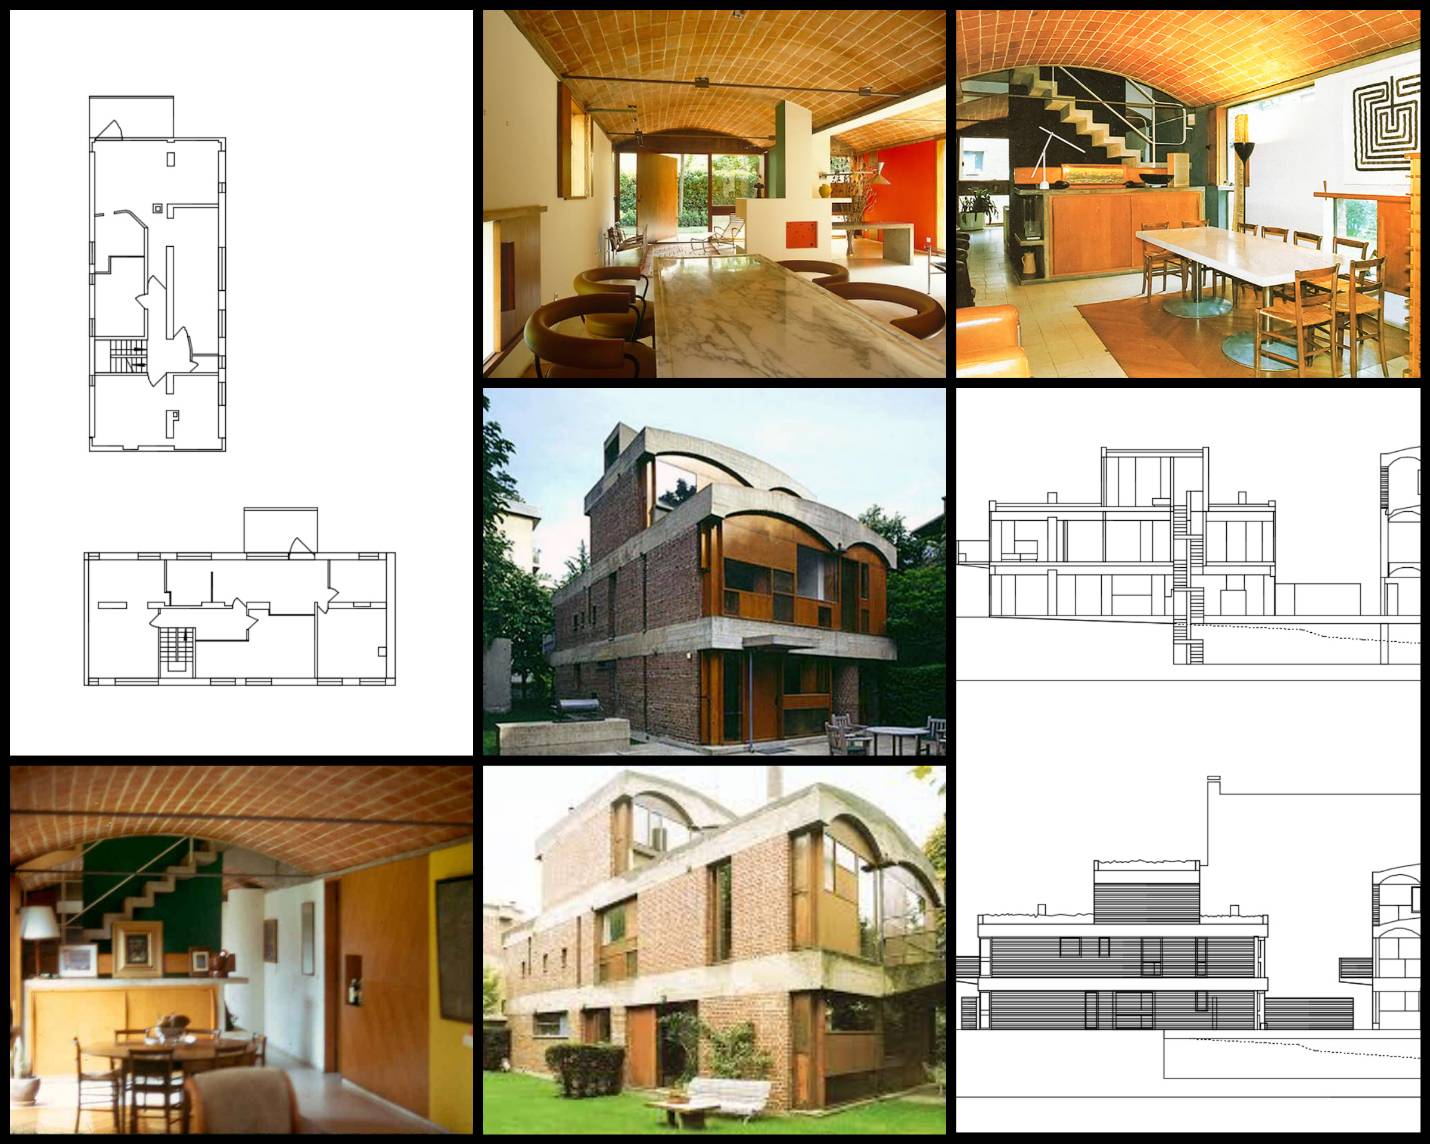 【世界知名建築案例研究CAD設計施工圖】Maisons Jaoul-Le Corbusier勒·柯布西耶